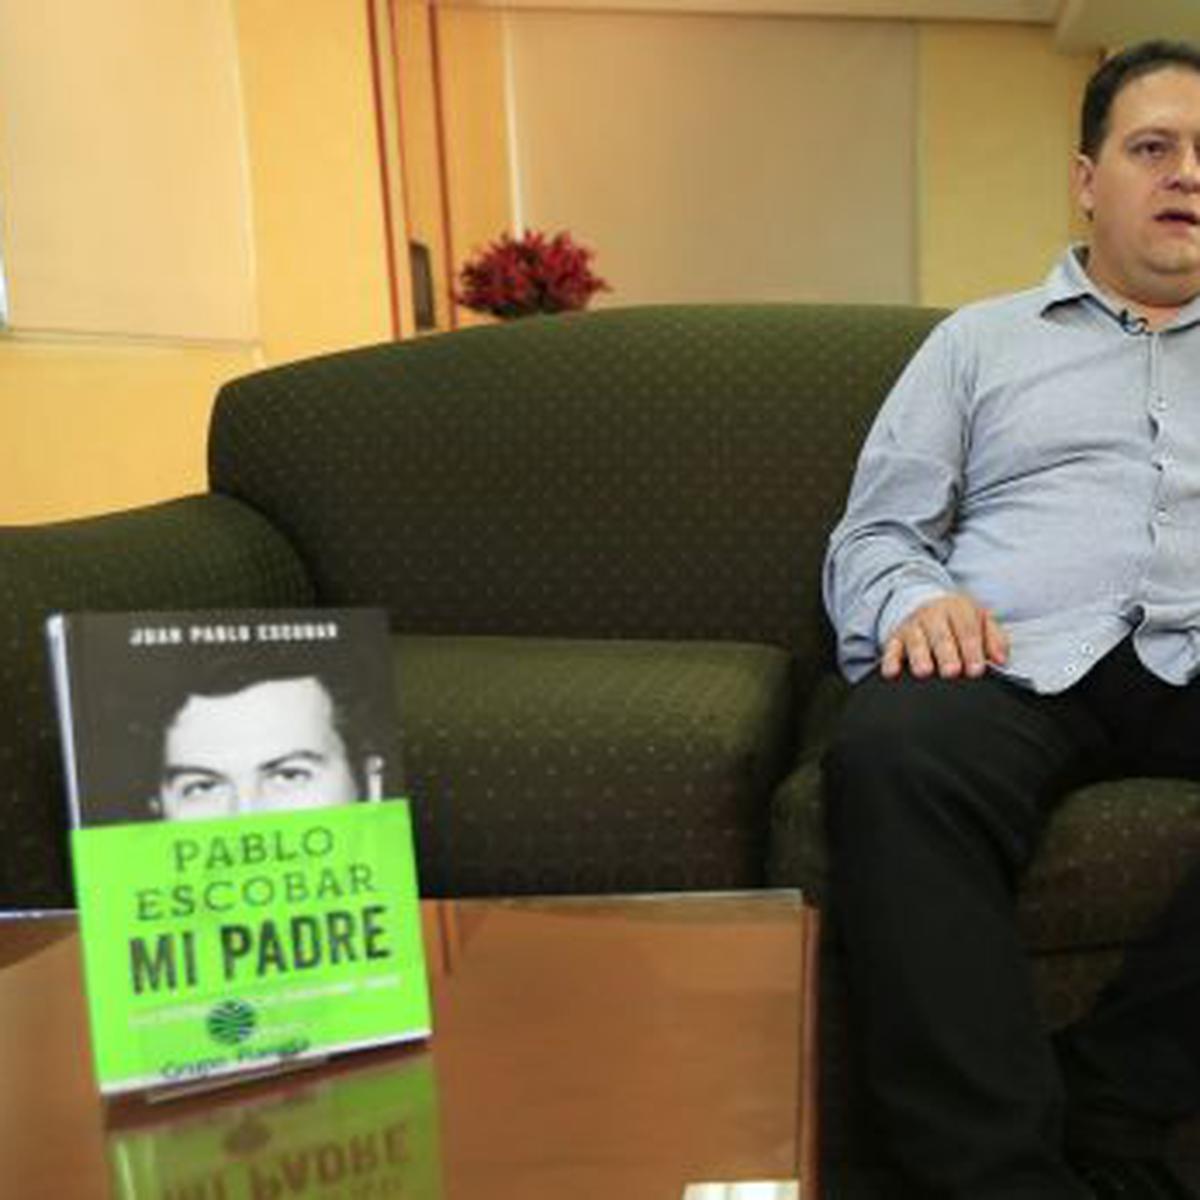 Hijo de Pablo Escobar deploró series y películas sobre su padre | TVMAS |  EL COMERCIO PERÚ